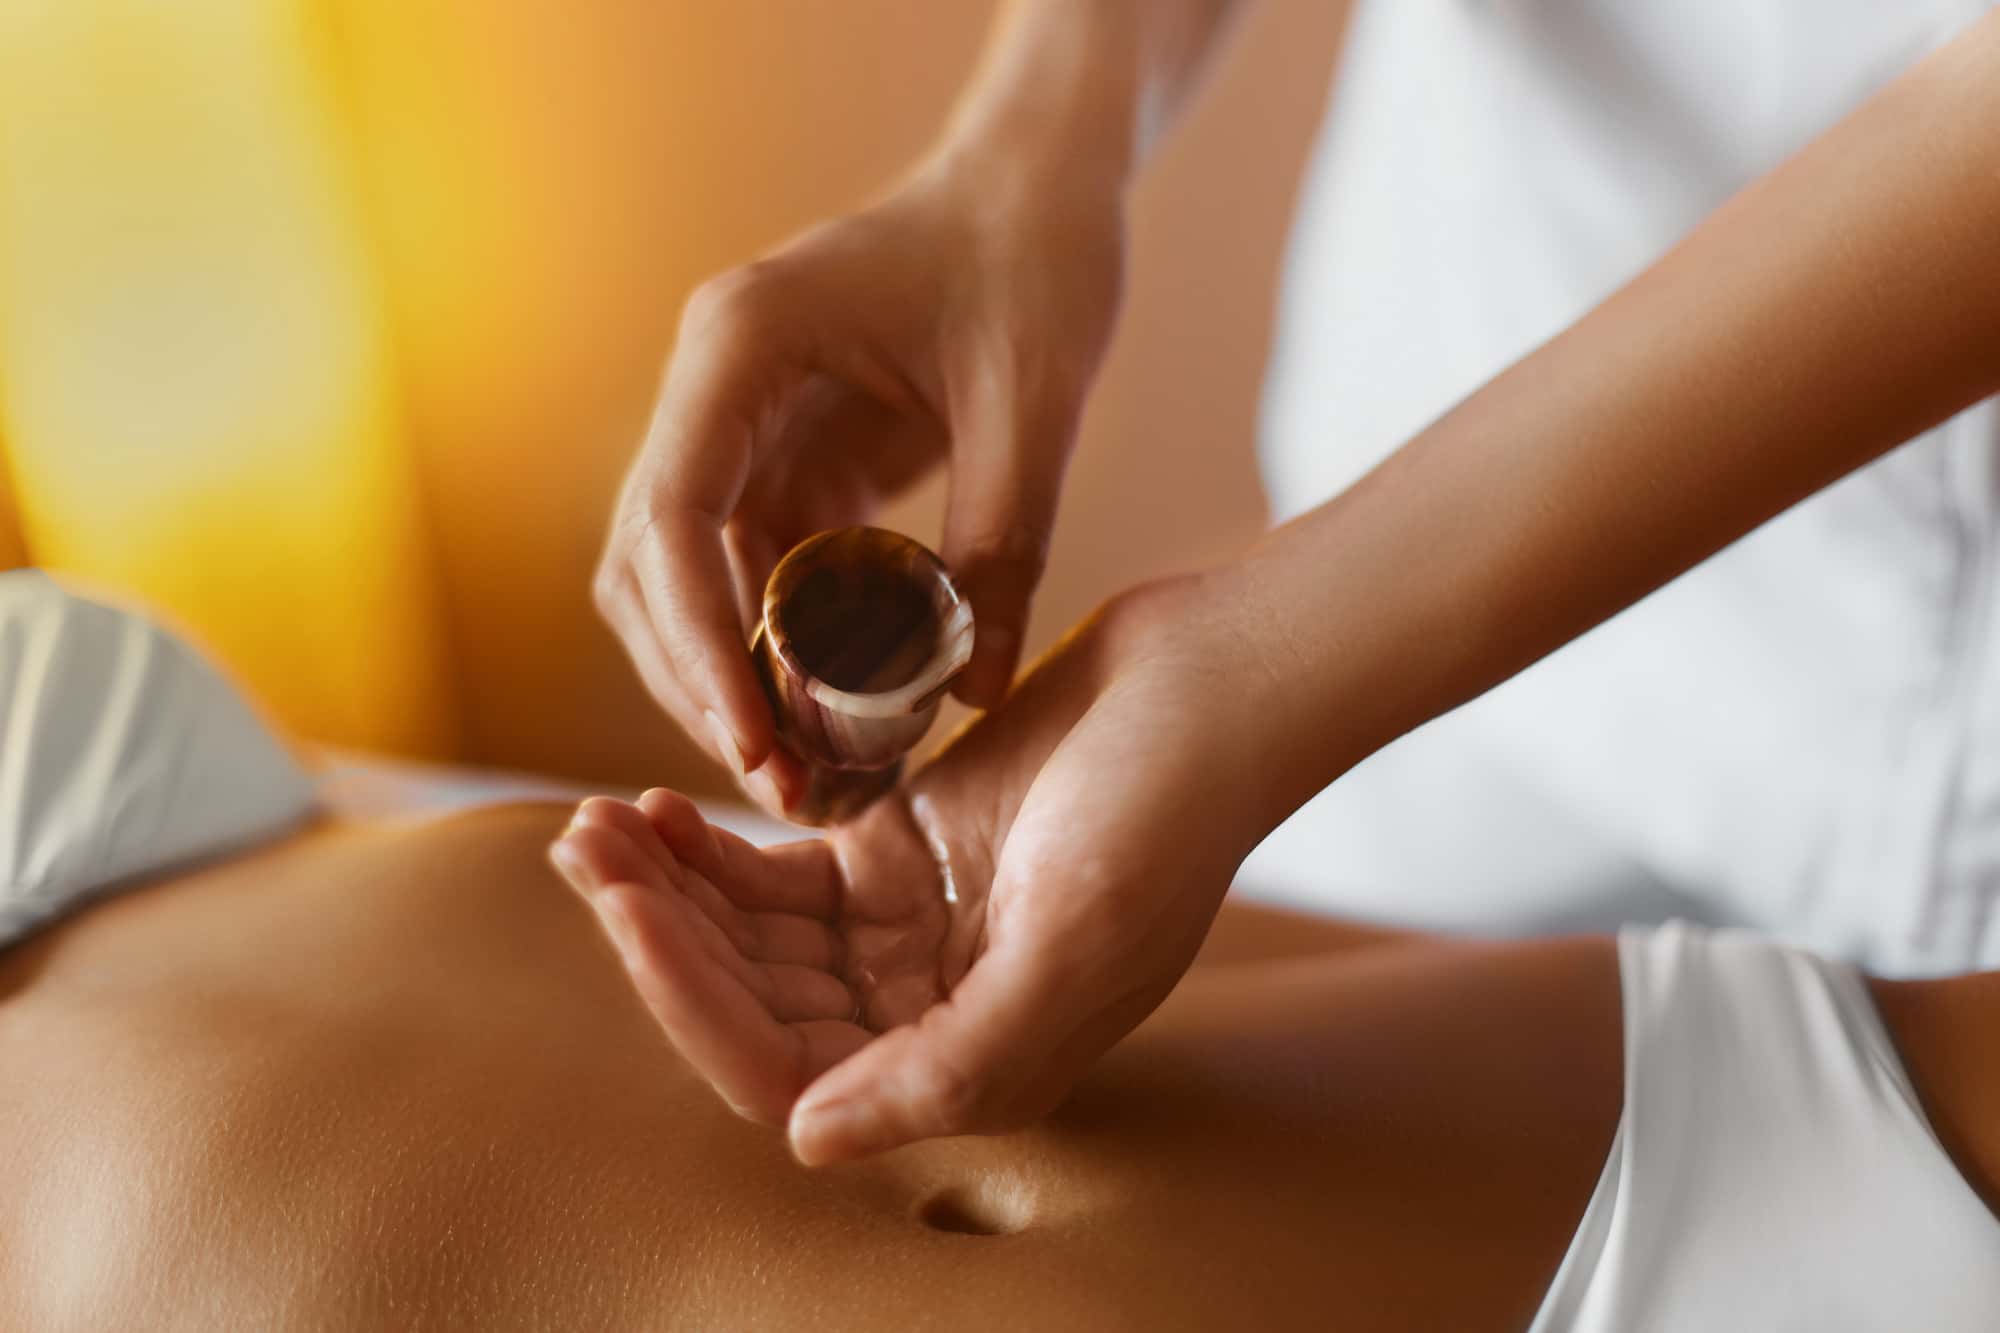 Massaggio con oli essenziali: benefici e controindicazioni 